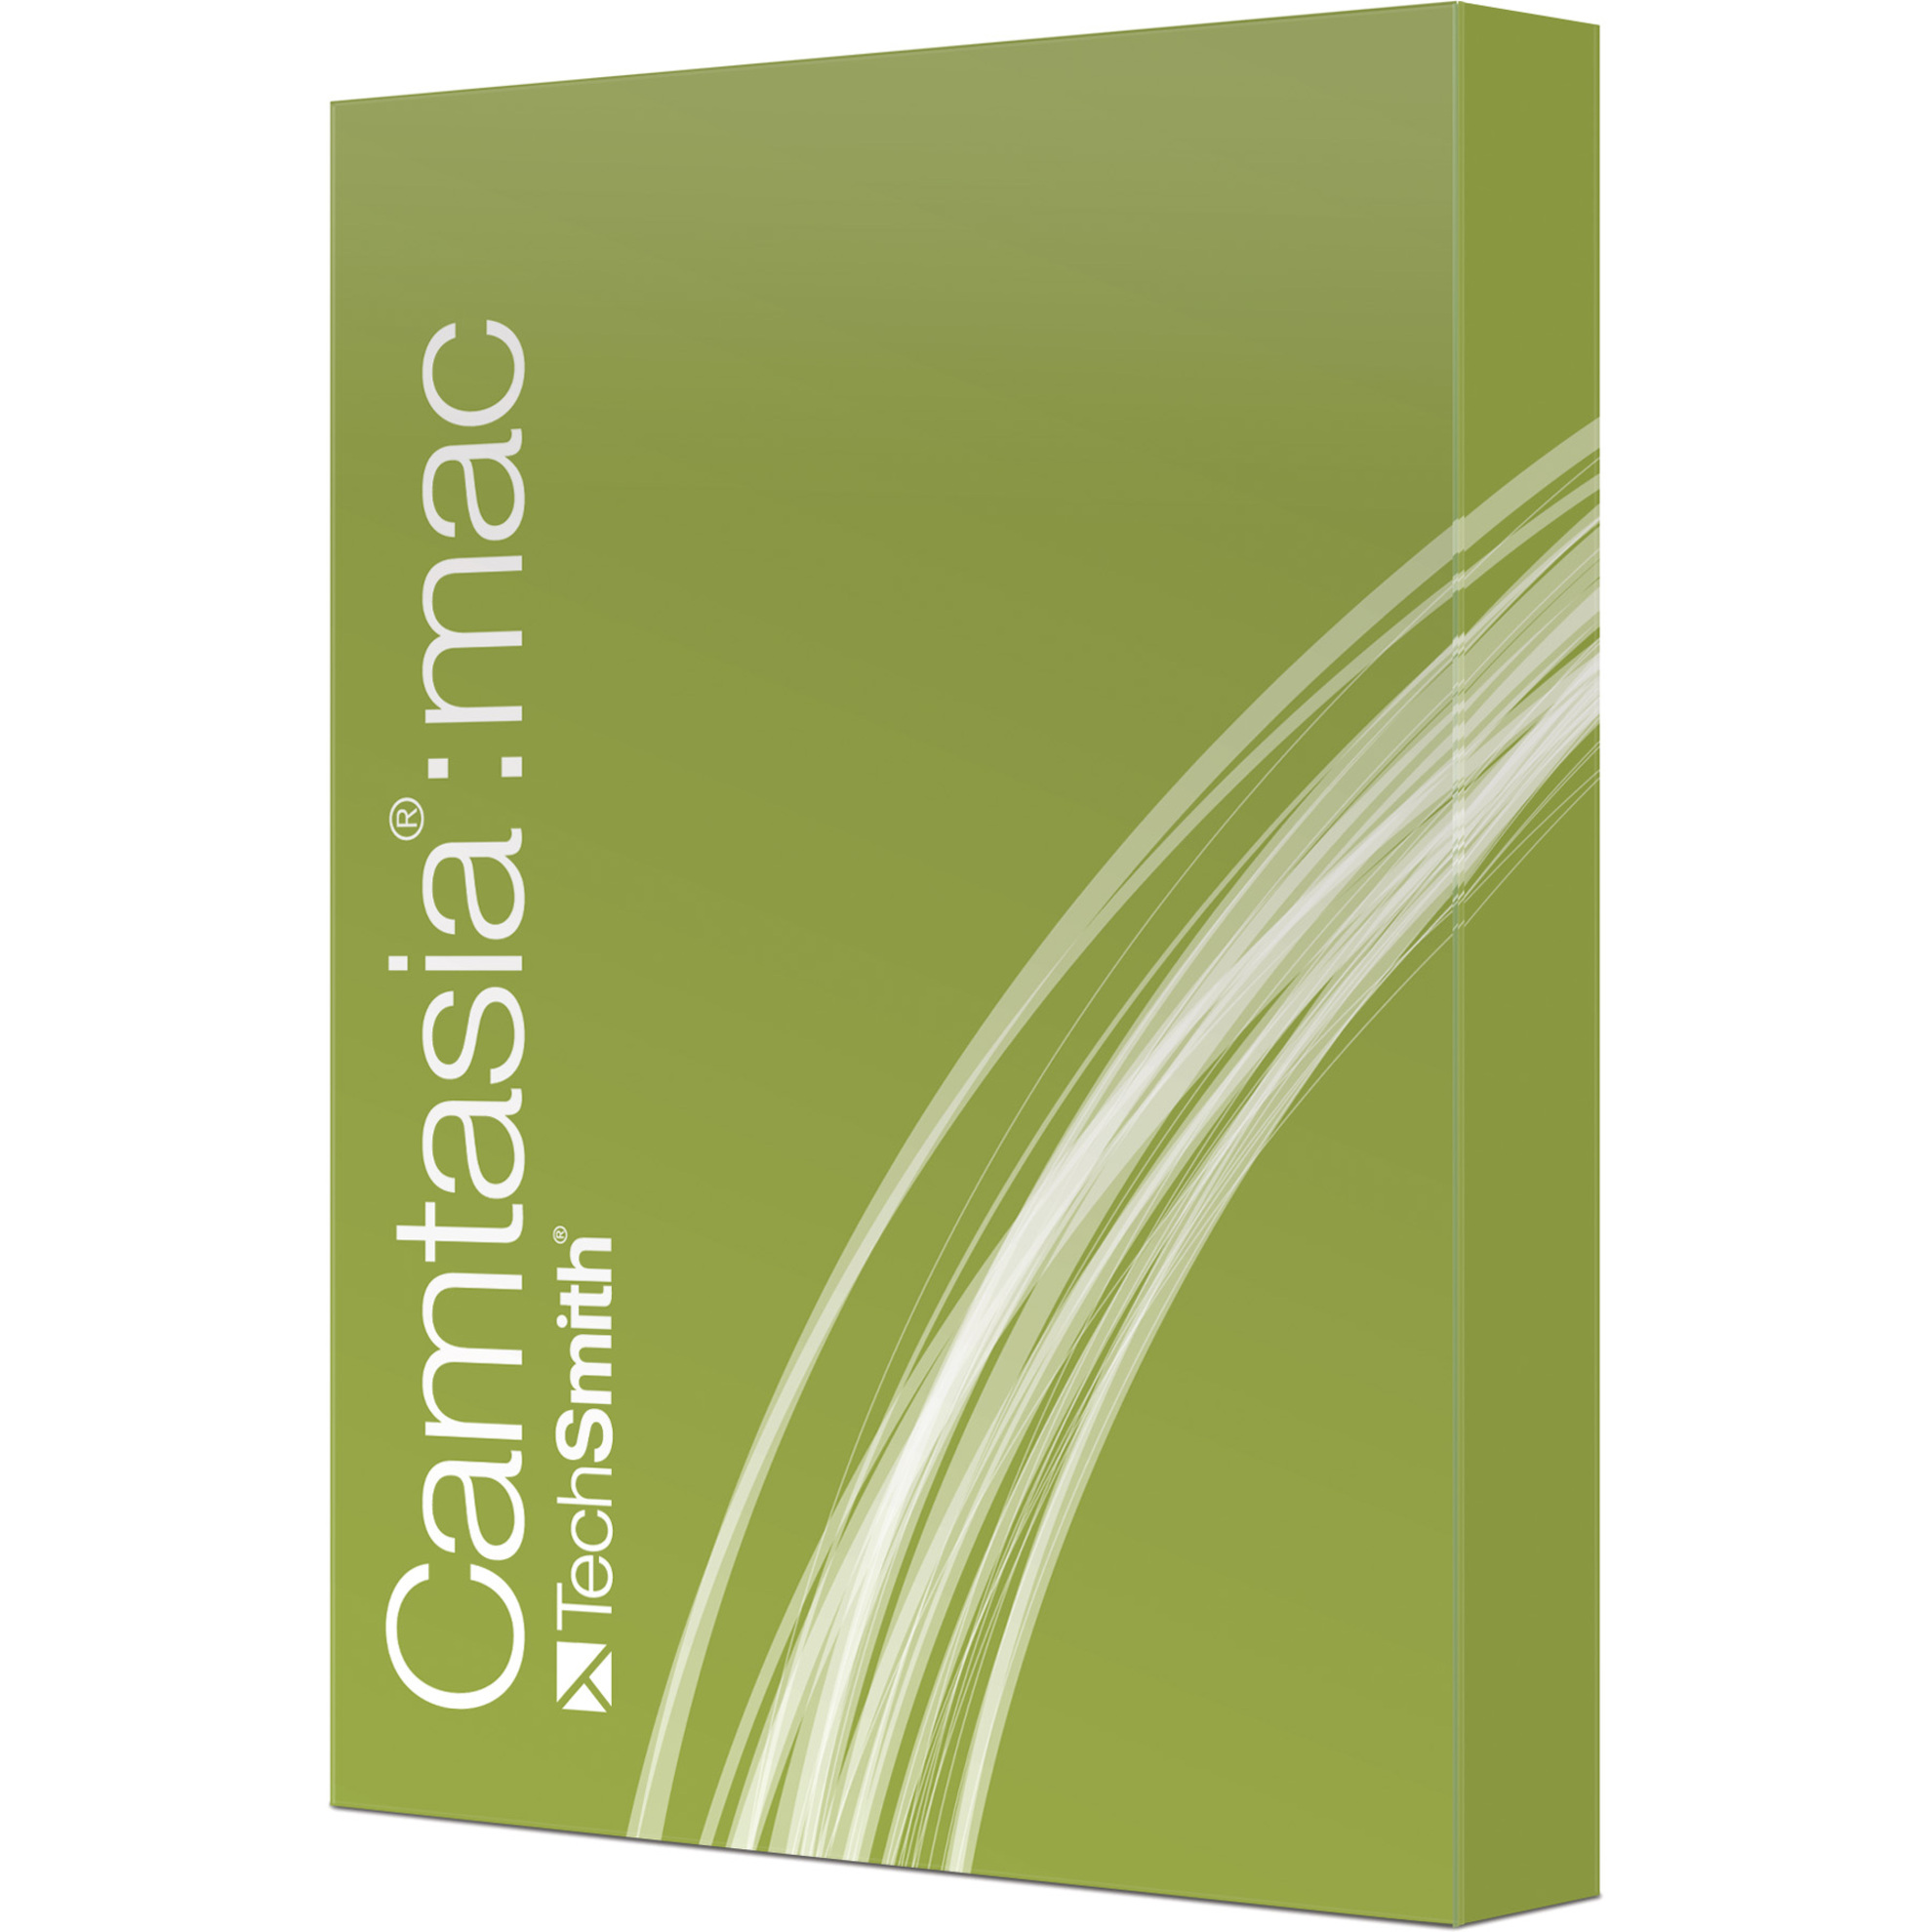 H1 Tải về Camtasia - Phần mềm chỉnh sửa video chuyên nghiệp cho người dùng